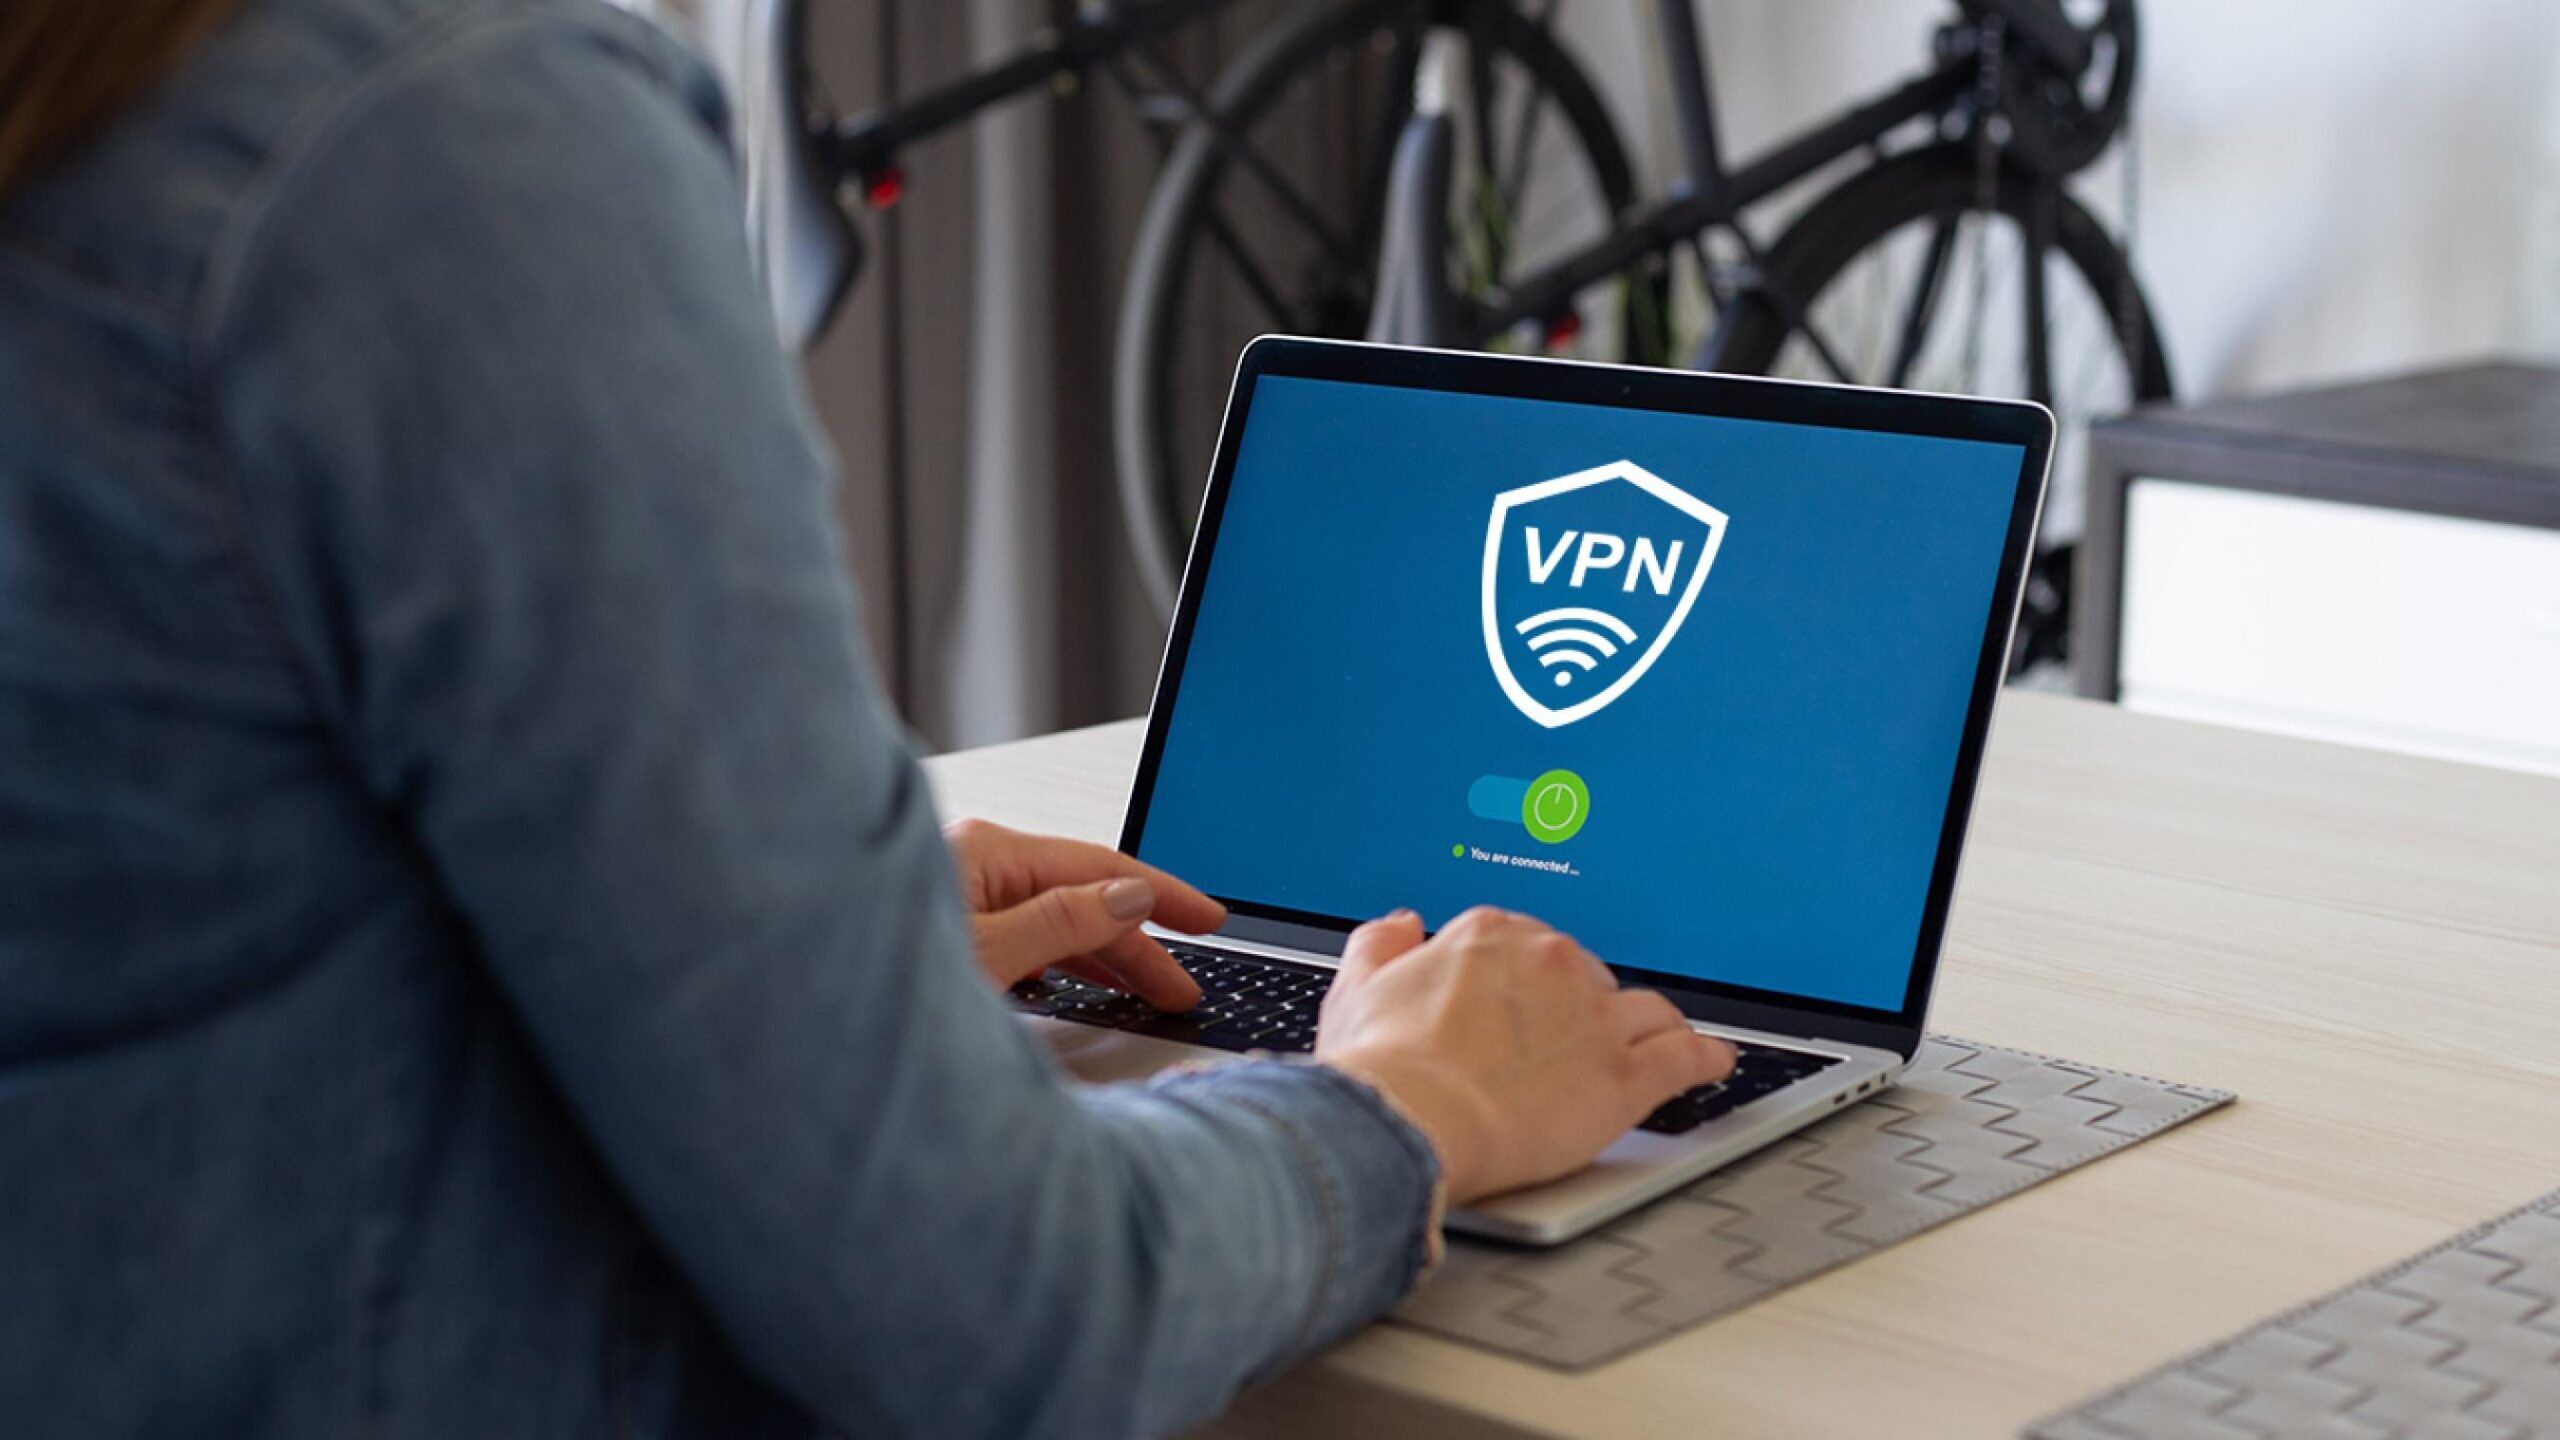 Olağanüstü Hallerde Açılmayan Sitelere Erişmenizi Sağlayan Uygulama: VPN